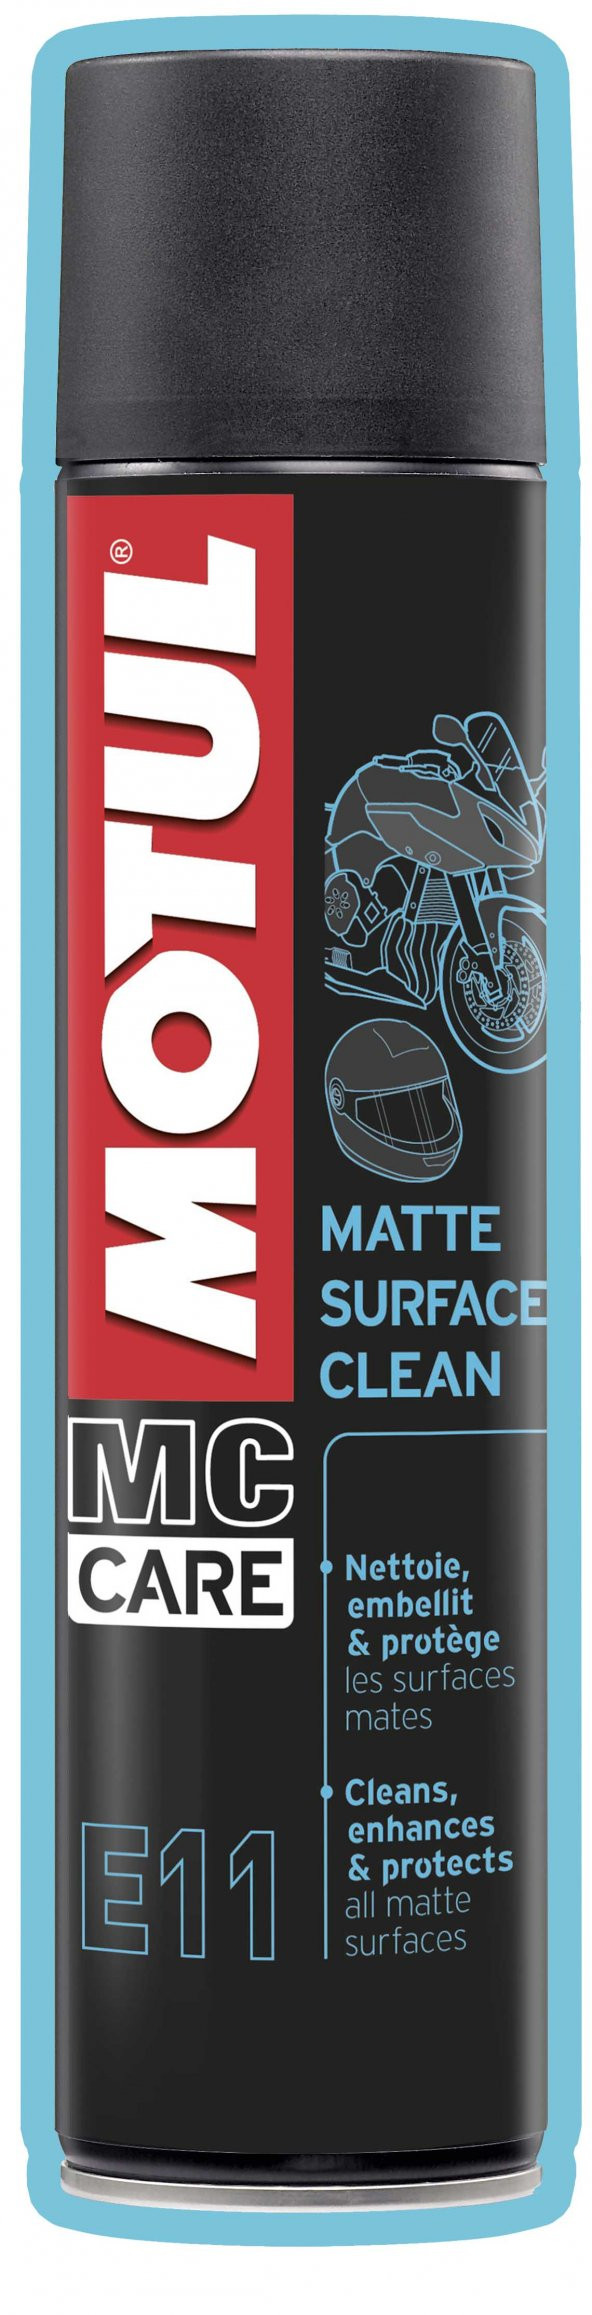 Motul E11 Matte Surface Clean 0.4 Litre